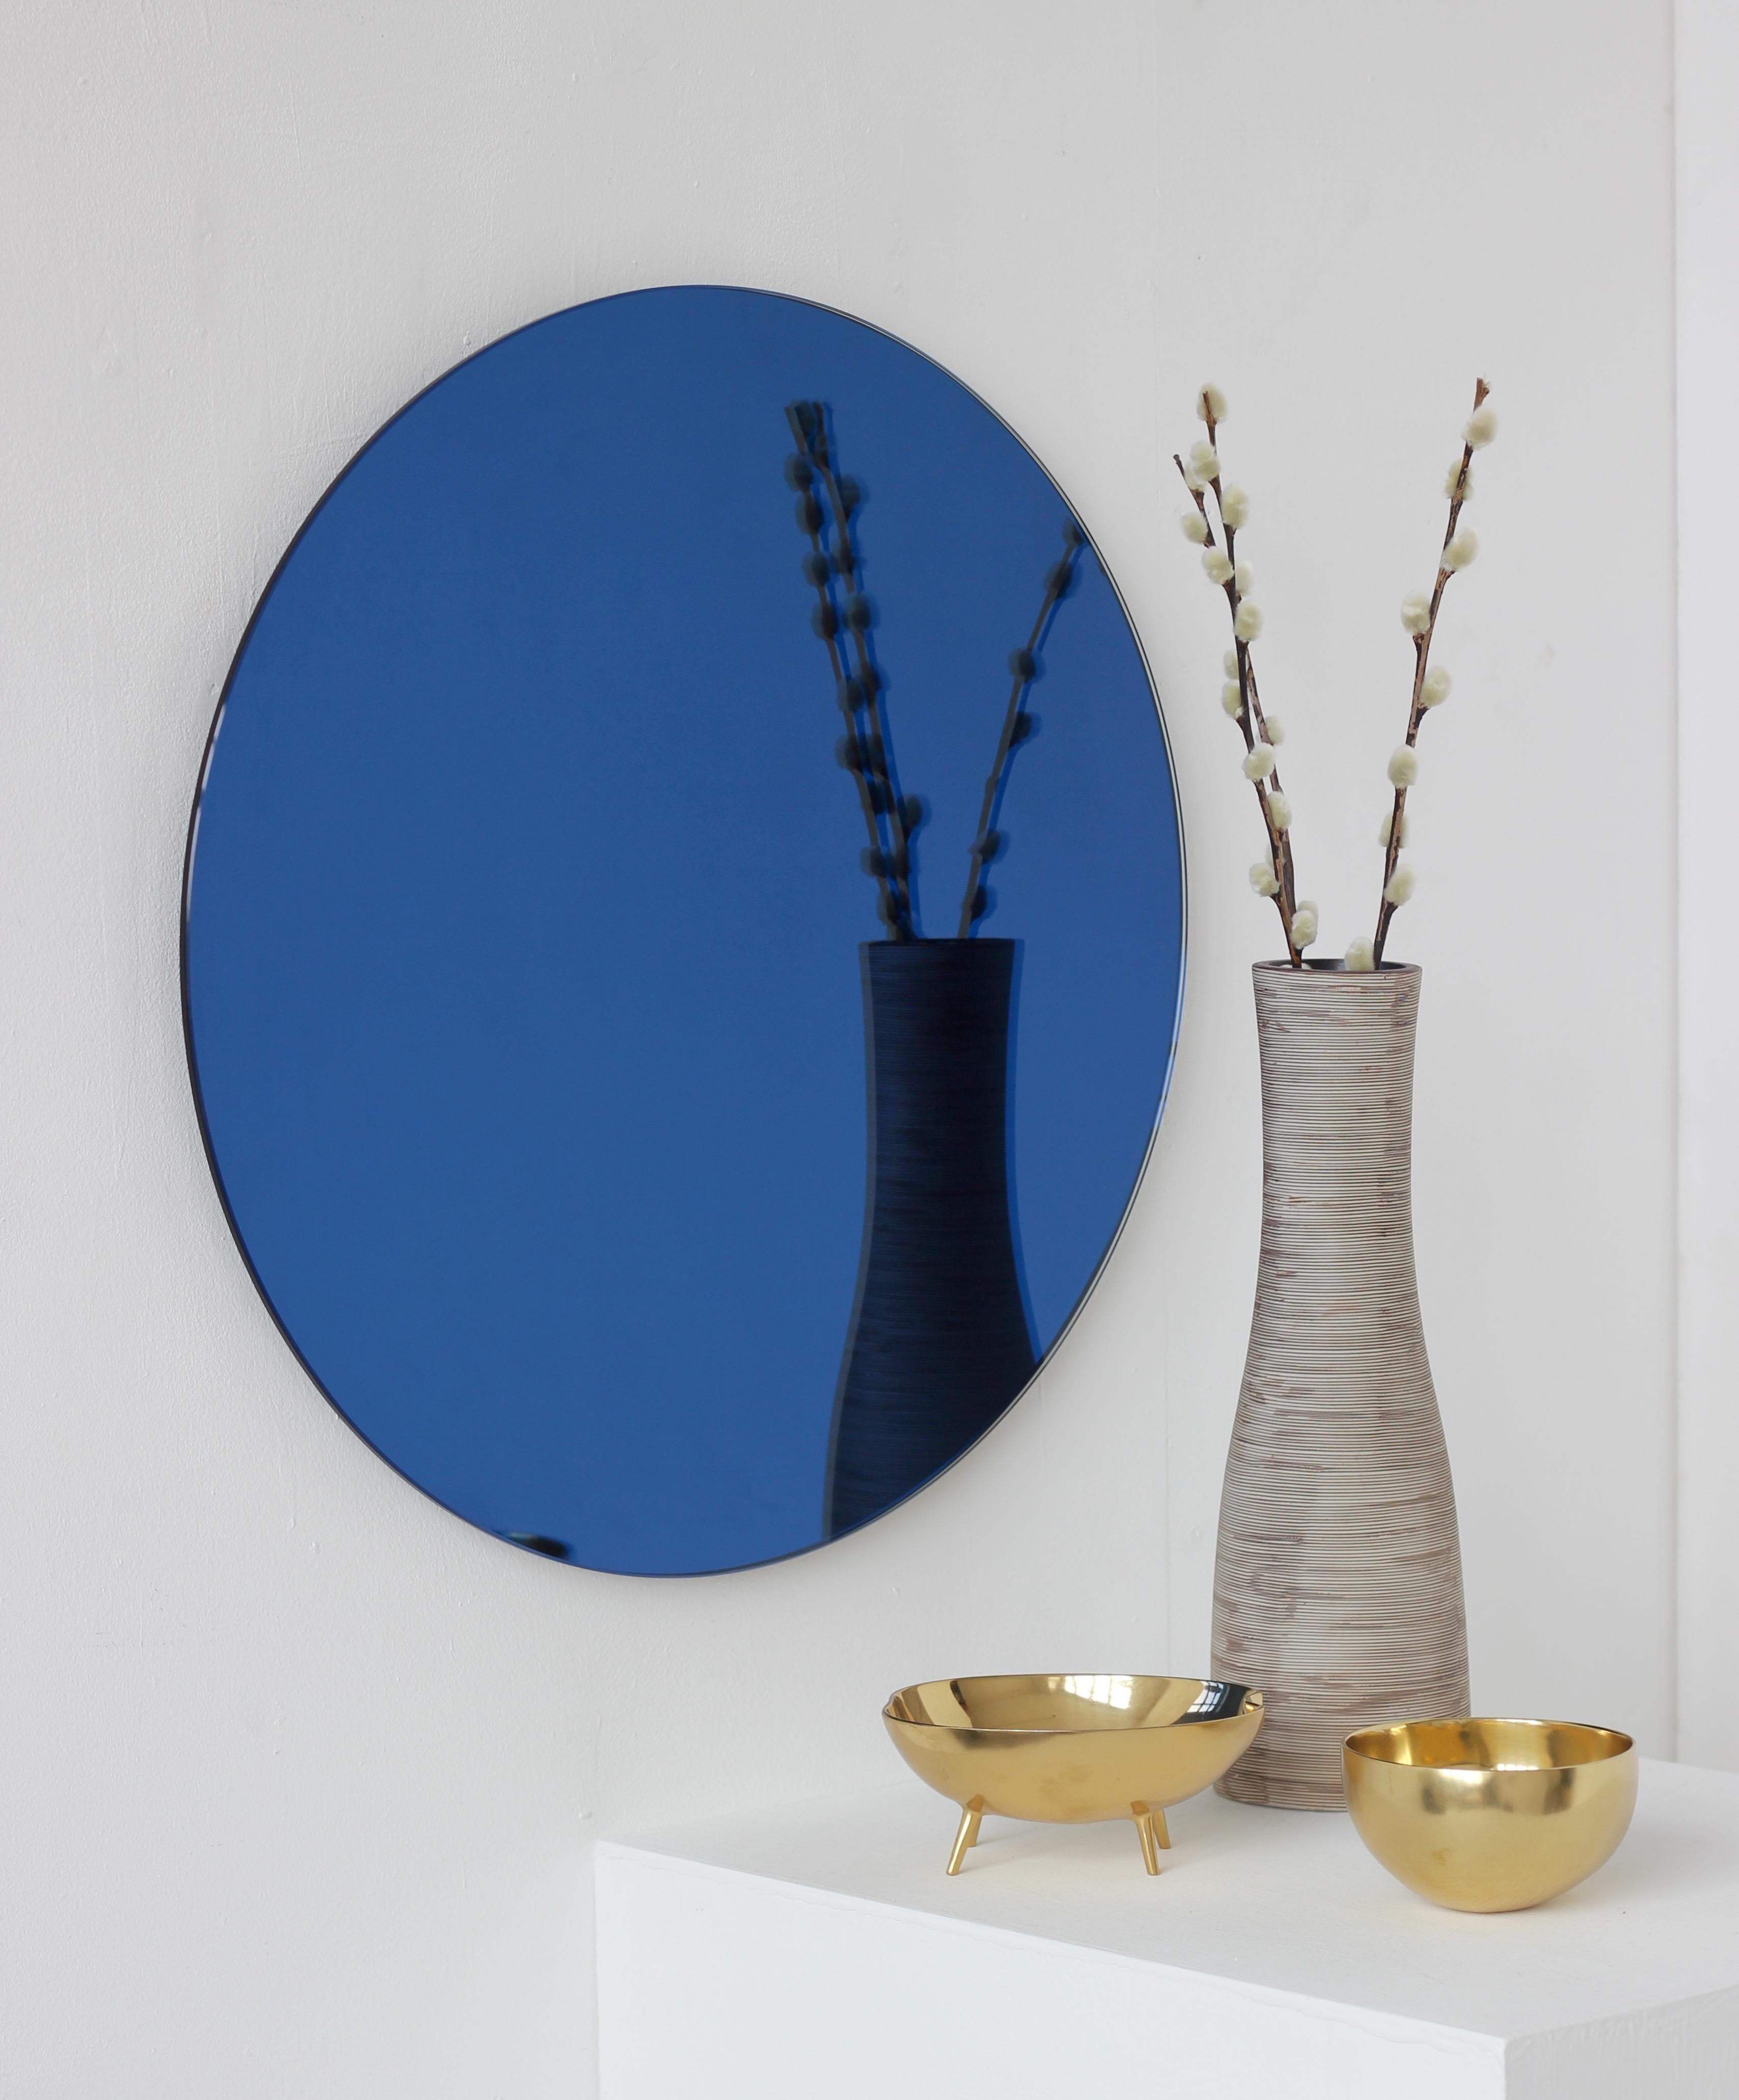 Charmanter und minimalistischer runder, rahmenloser, blau getönter Orbis™-Spiegel mit Schwebeeffekt. Hochwertiges Design, das dafür sorgt, dass der Spiegel perfekt parallel zur Wand steht. Entworfen und hergestellt in London, UK.

Ausgestattet mit